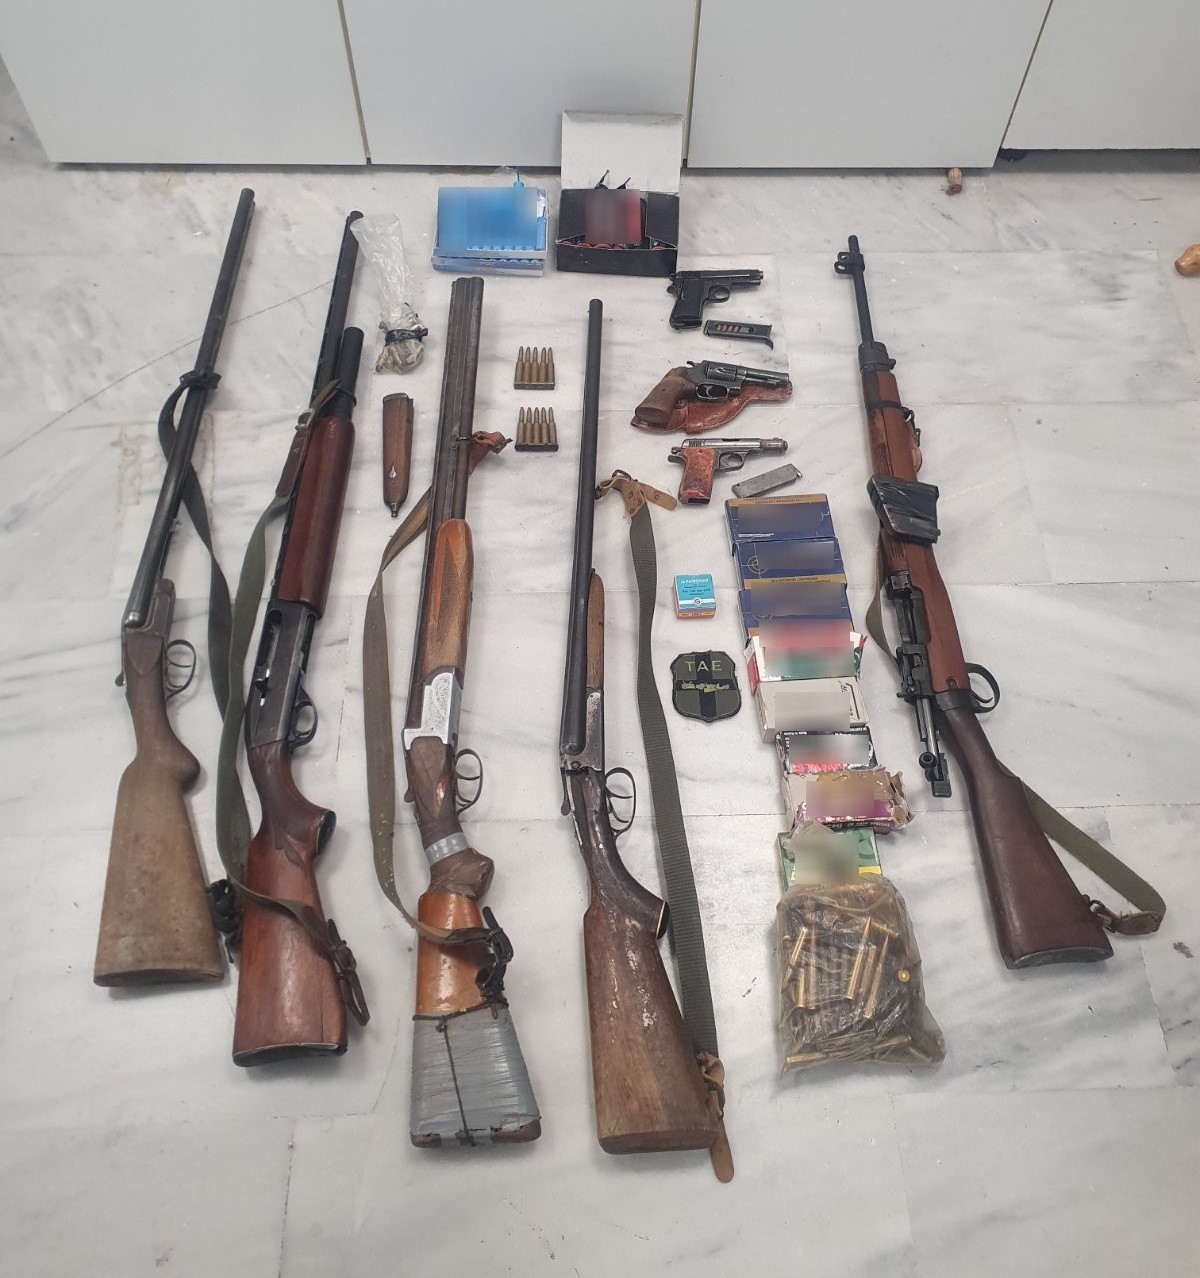 Χανιά: 4 συλλήψεις για όπλα και βεγγαλικά